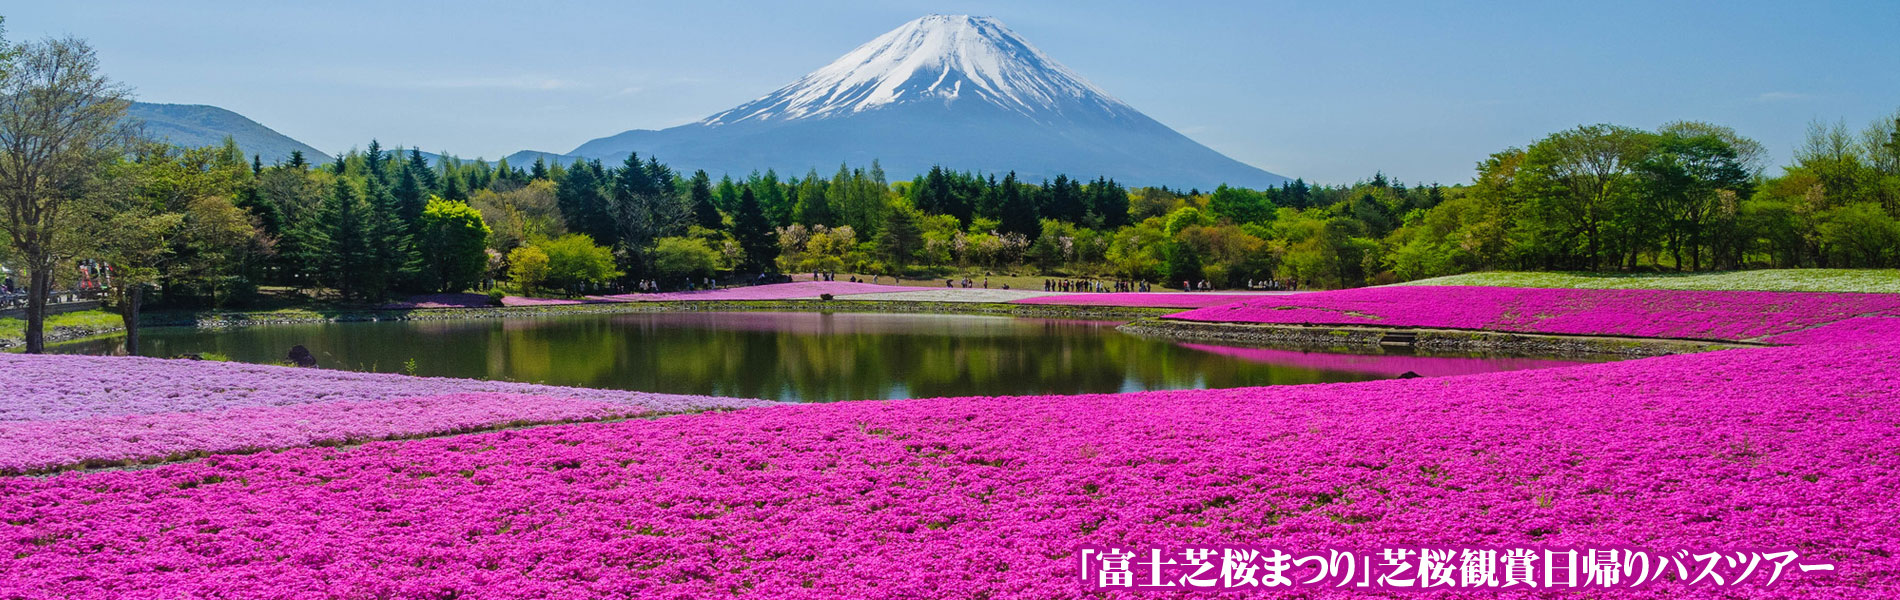 富士芝桜まつりバスツアー